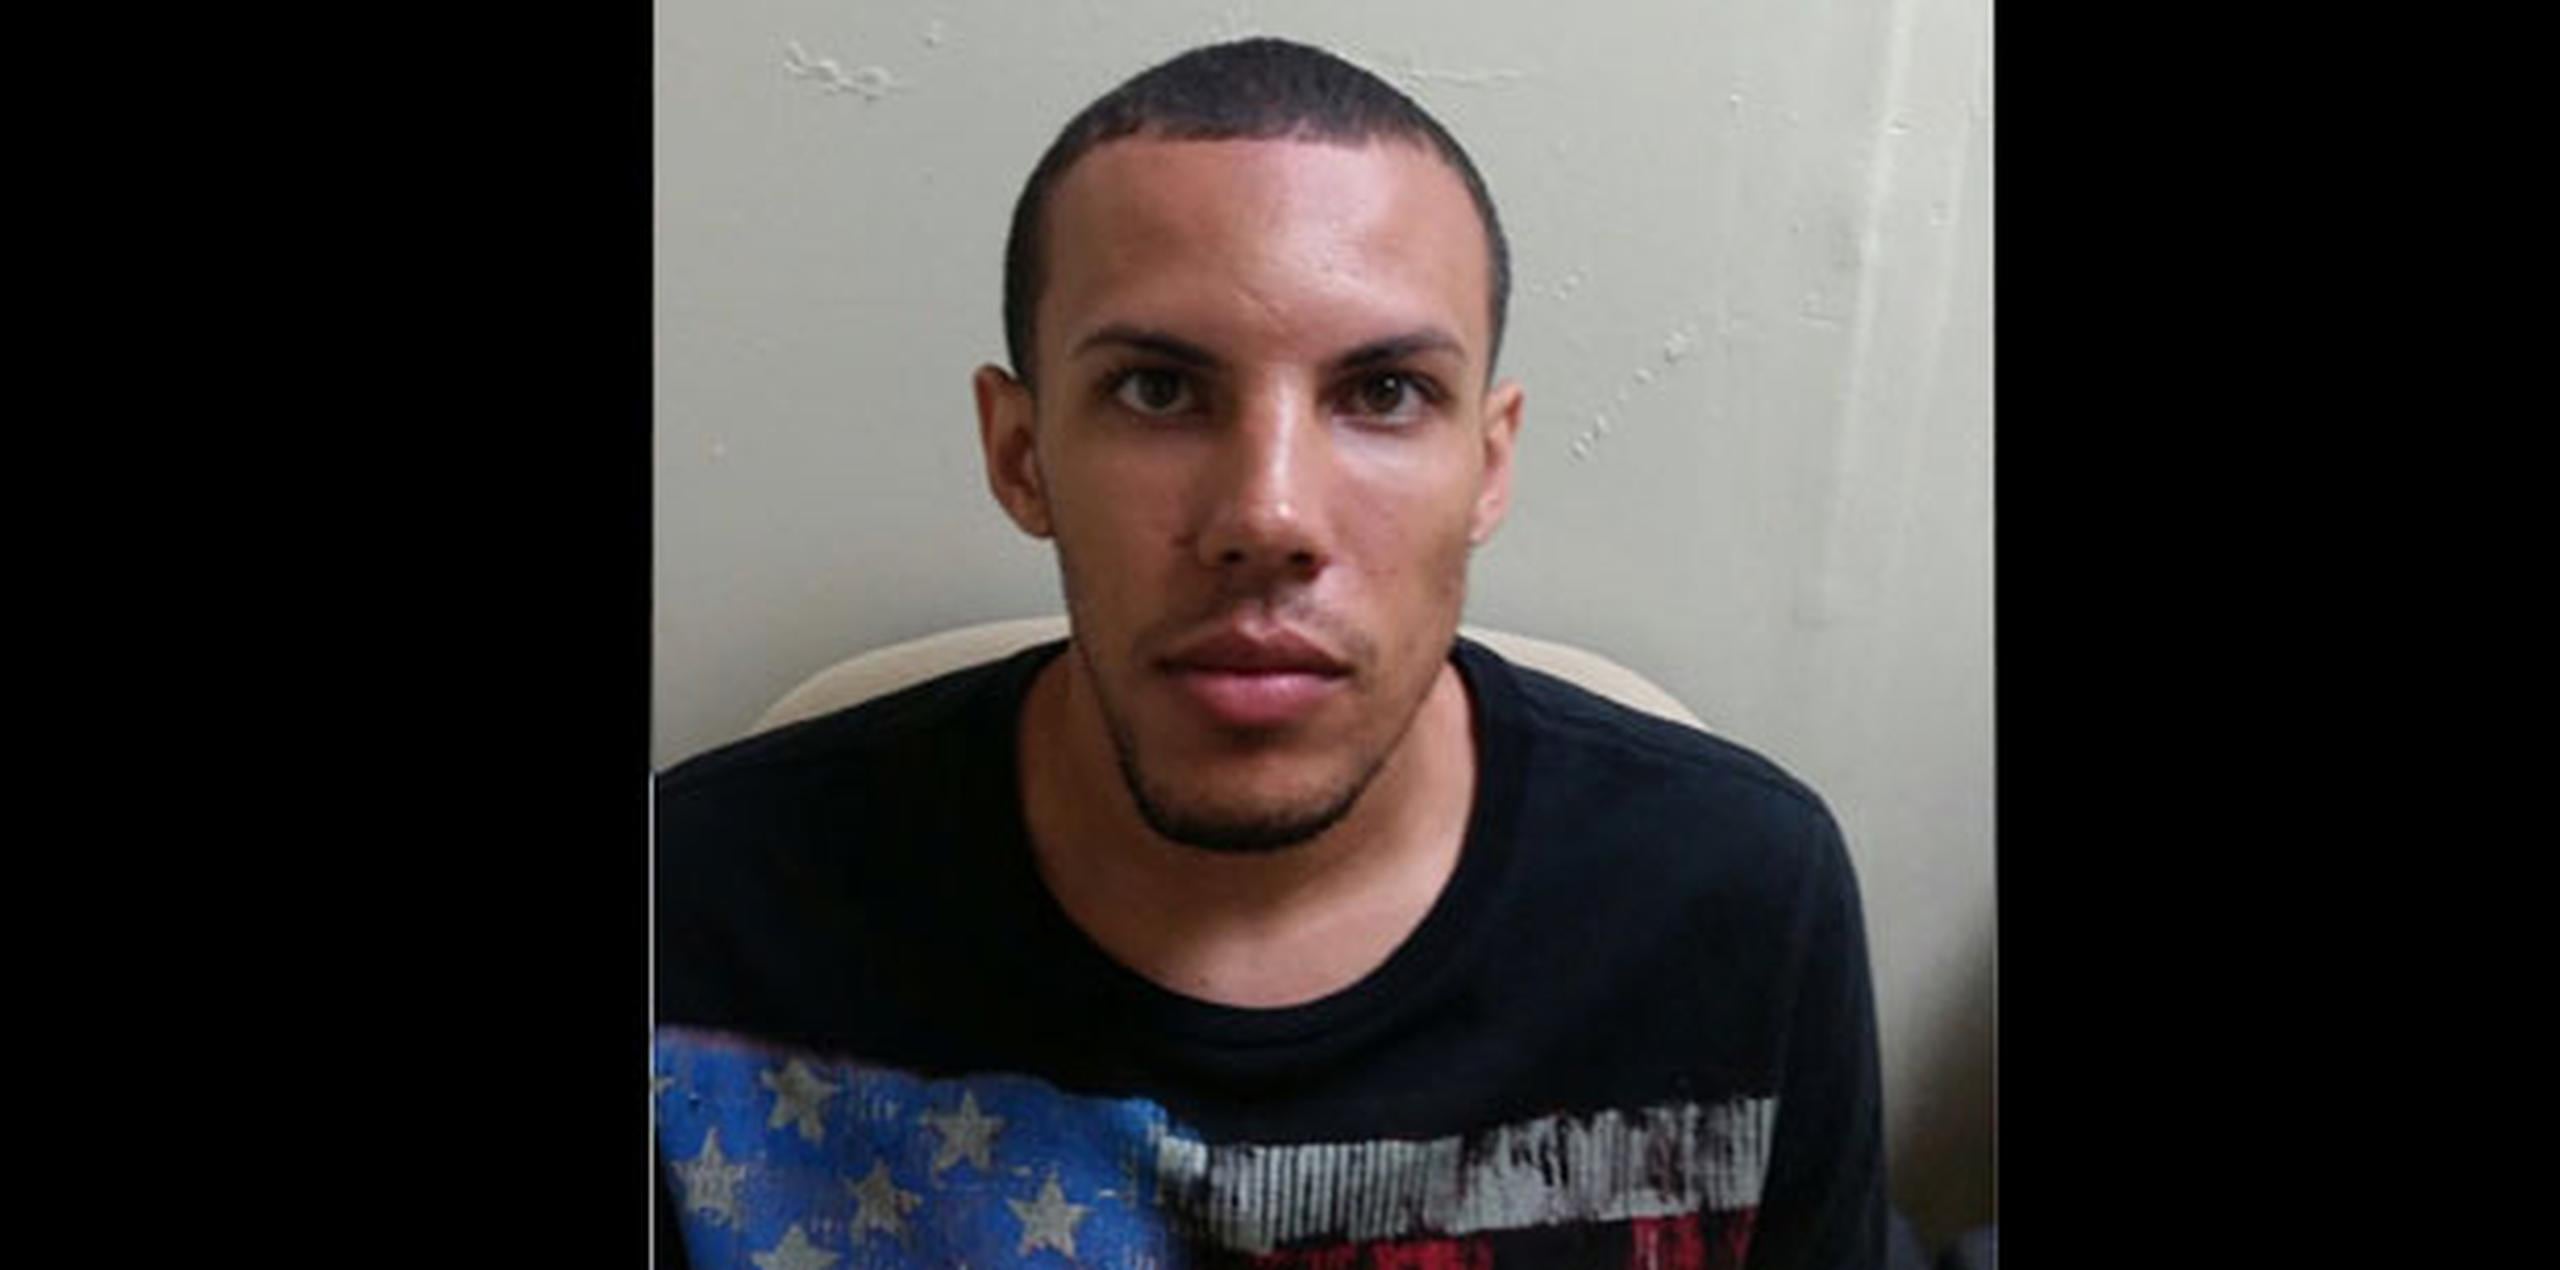 José Alejandro Medina Reyes, de 24 años, fue arrestado en el residencial Loma Alta en Carolina y no les ofreció resistencia. (Suministrada)